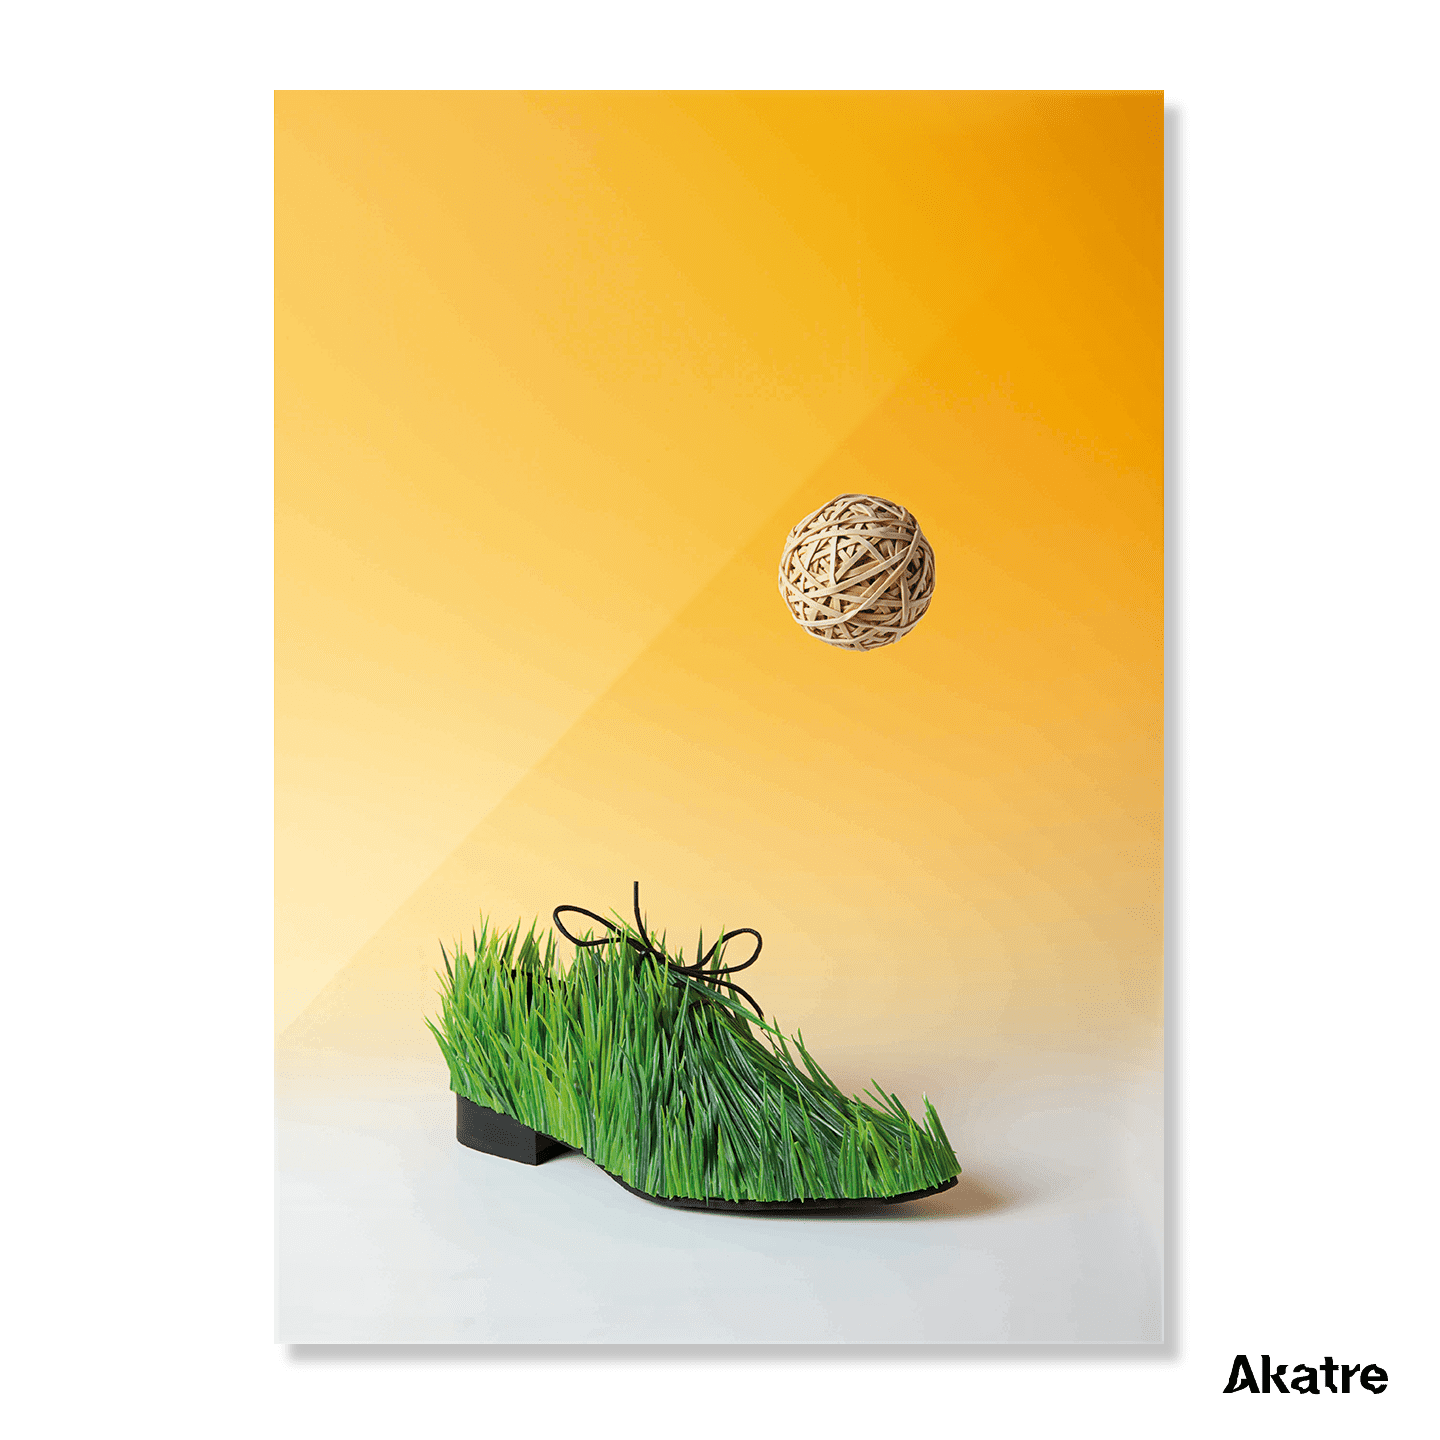 Grass Shoe